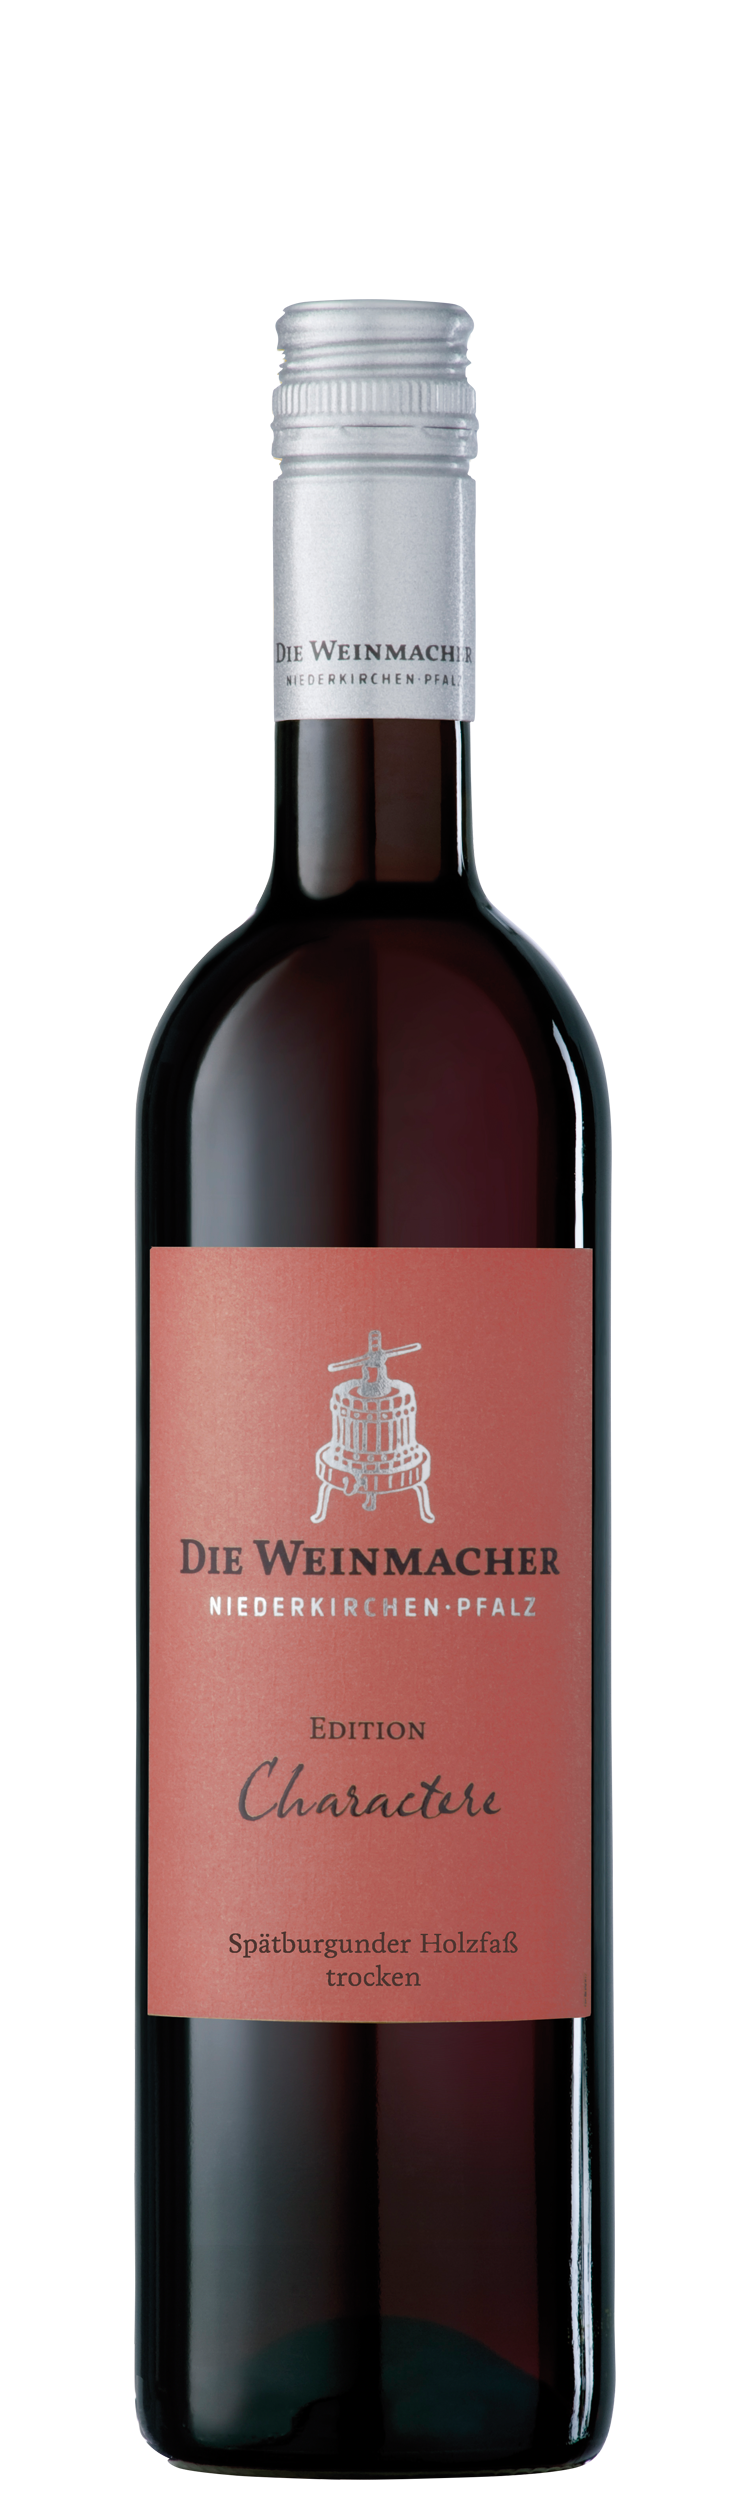 2020 Spätburgunder Holzfass trocken 0,75 L CHARACTERE - Die Weinmacher